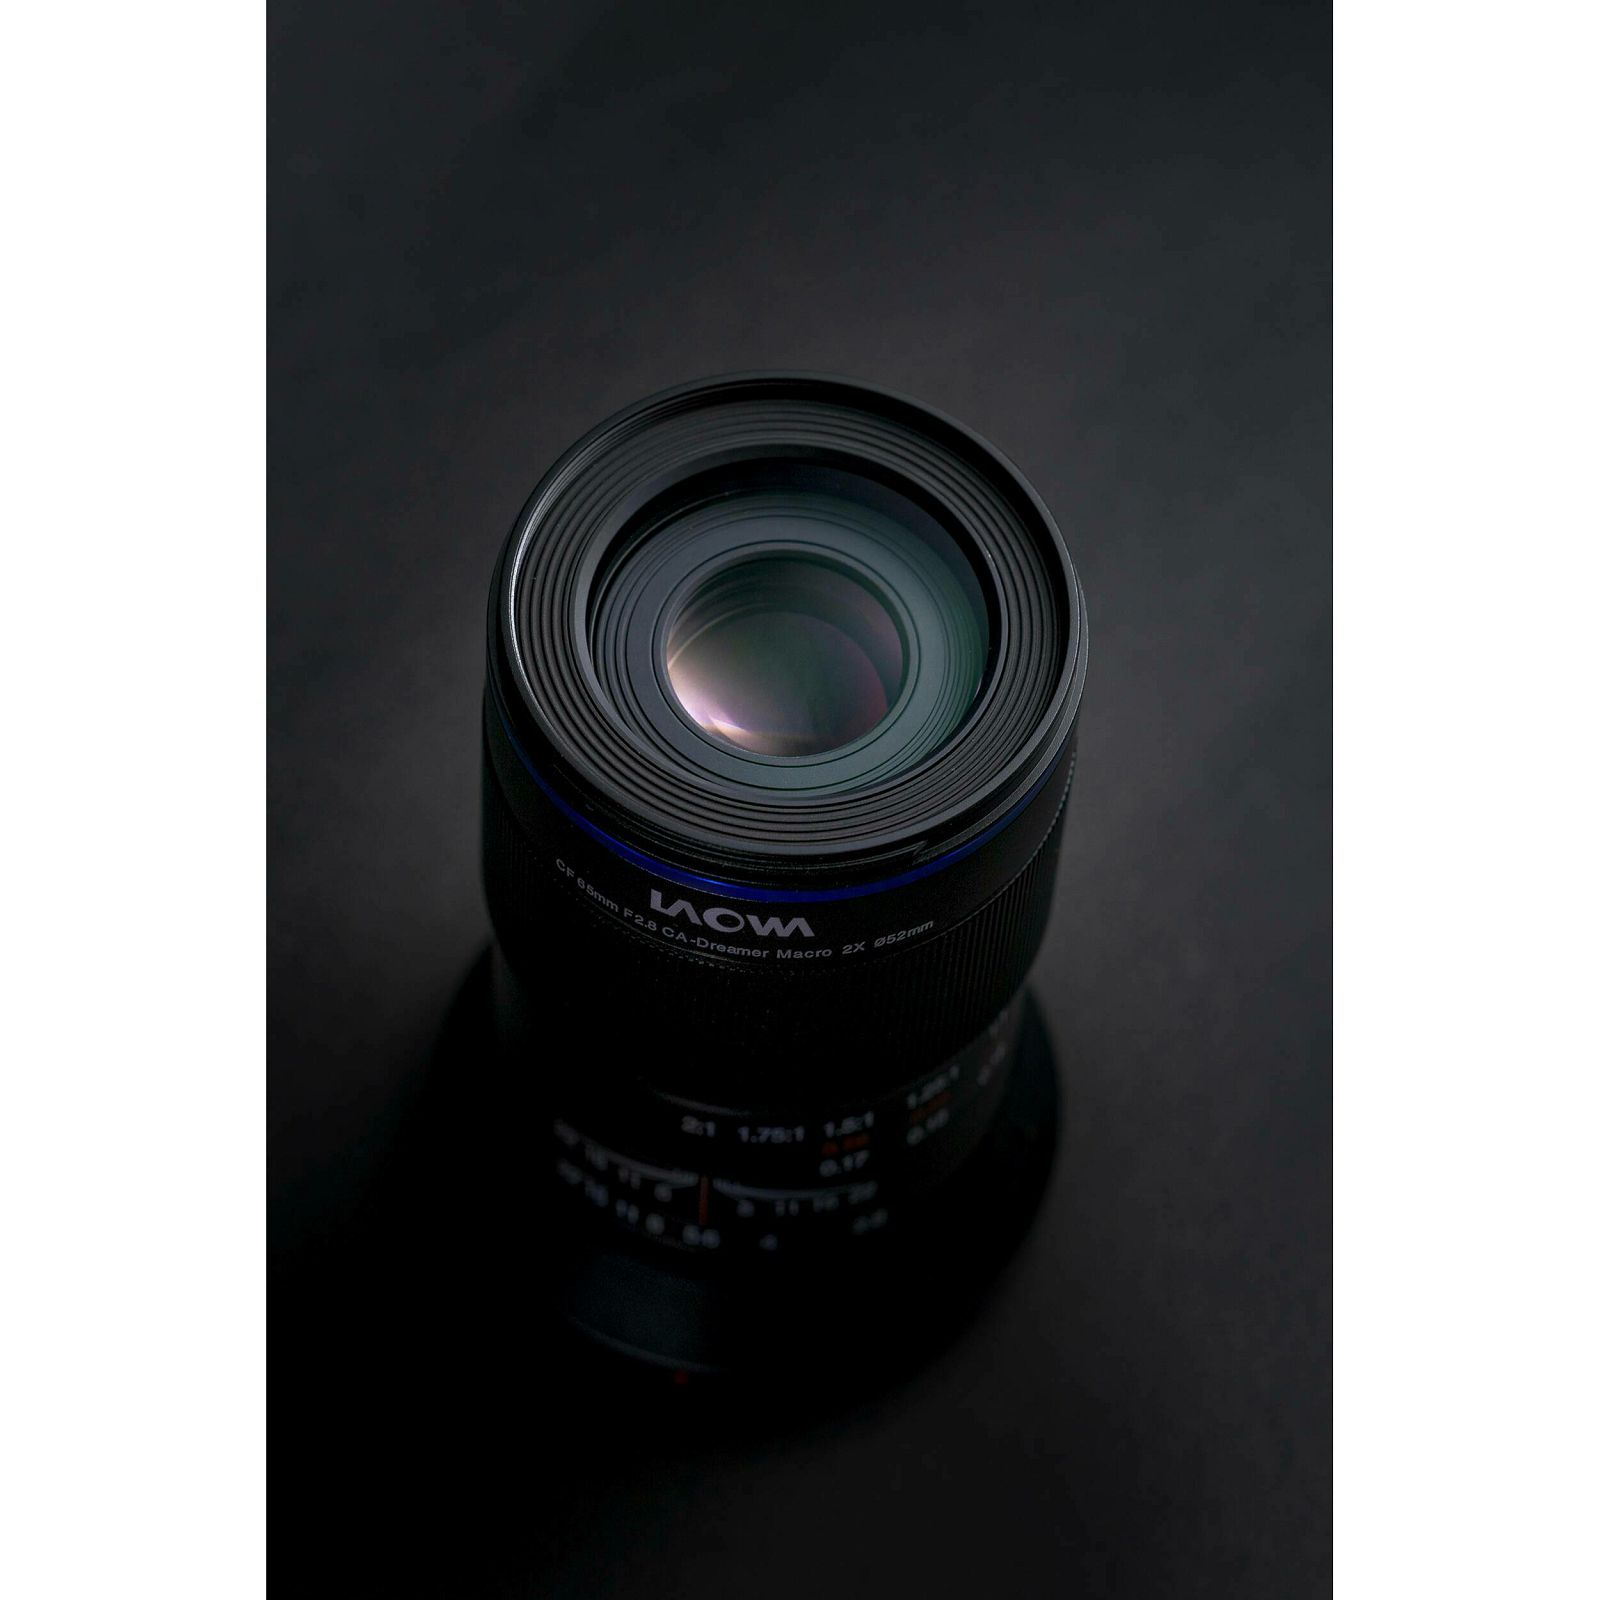 Venus Optics Laowa 65mm f/2.8 2x Ultra Macro APO objektiv za Nikon Z